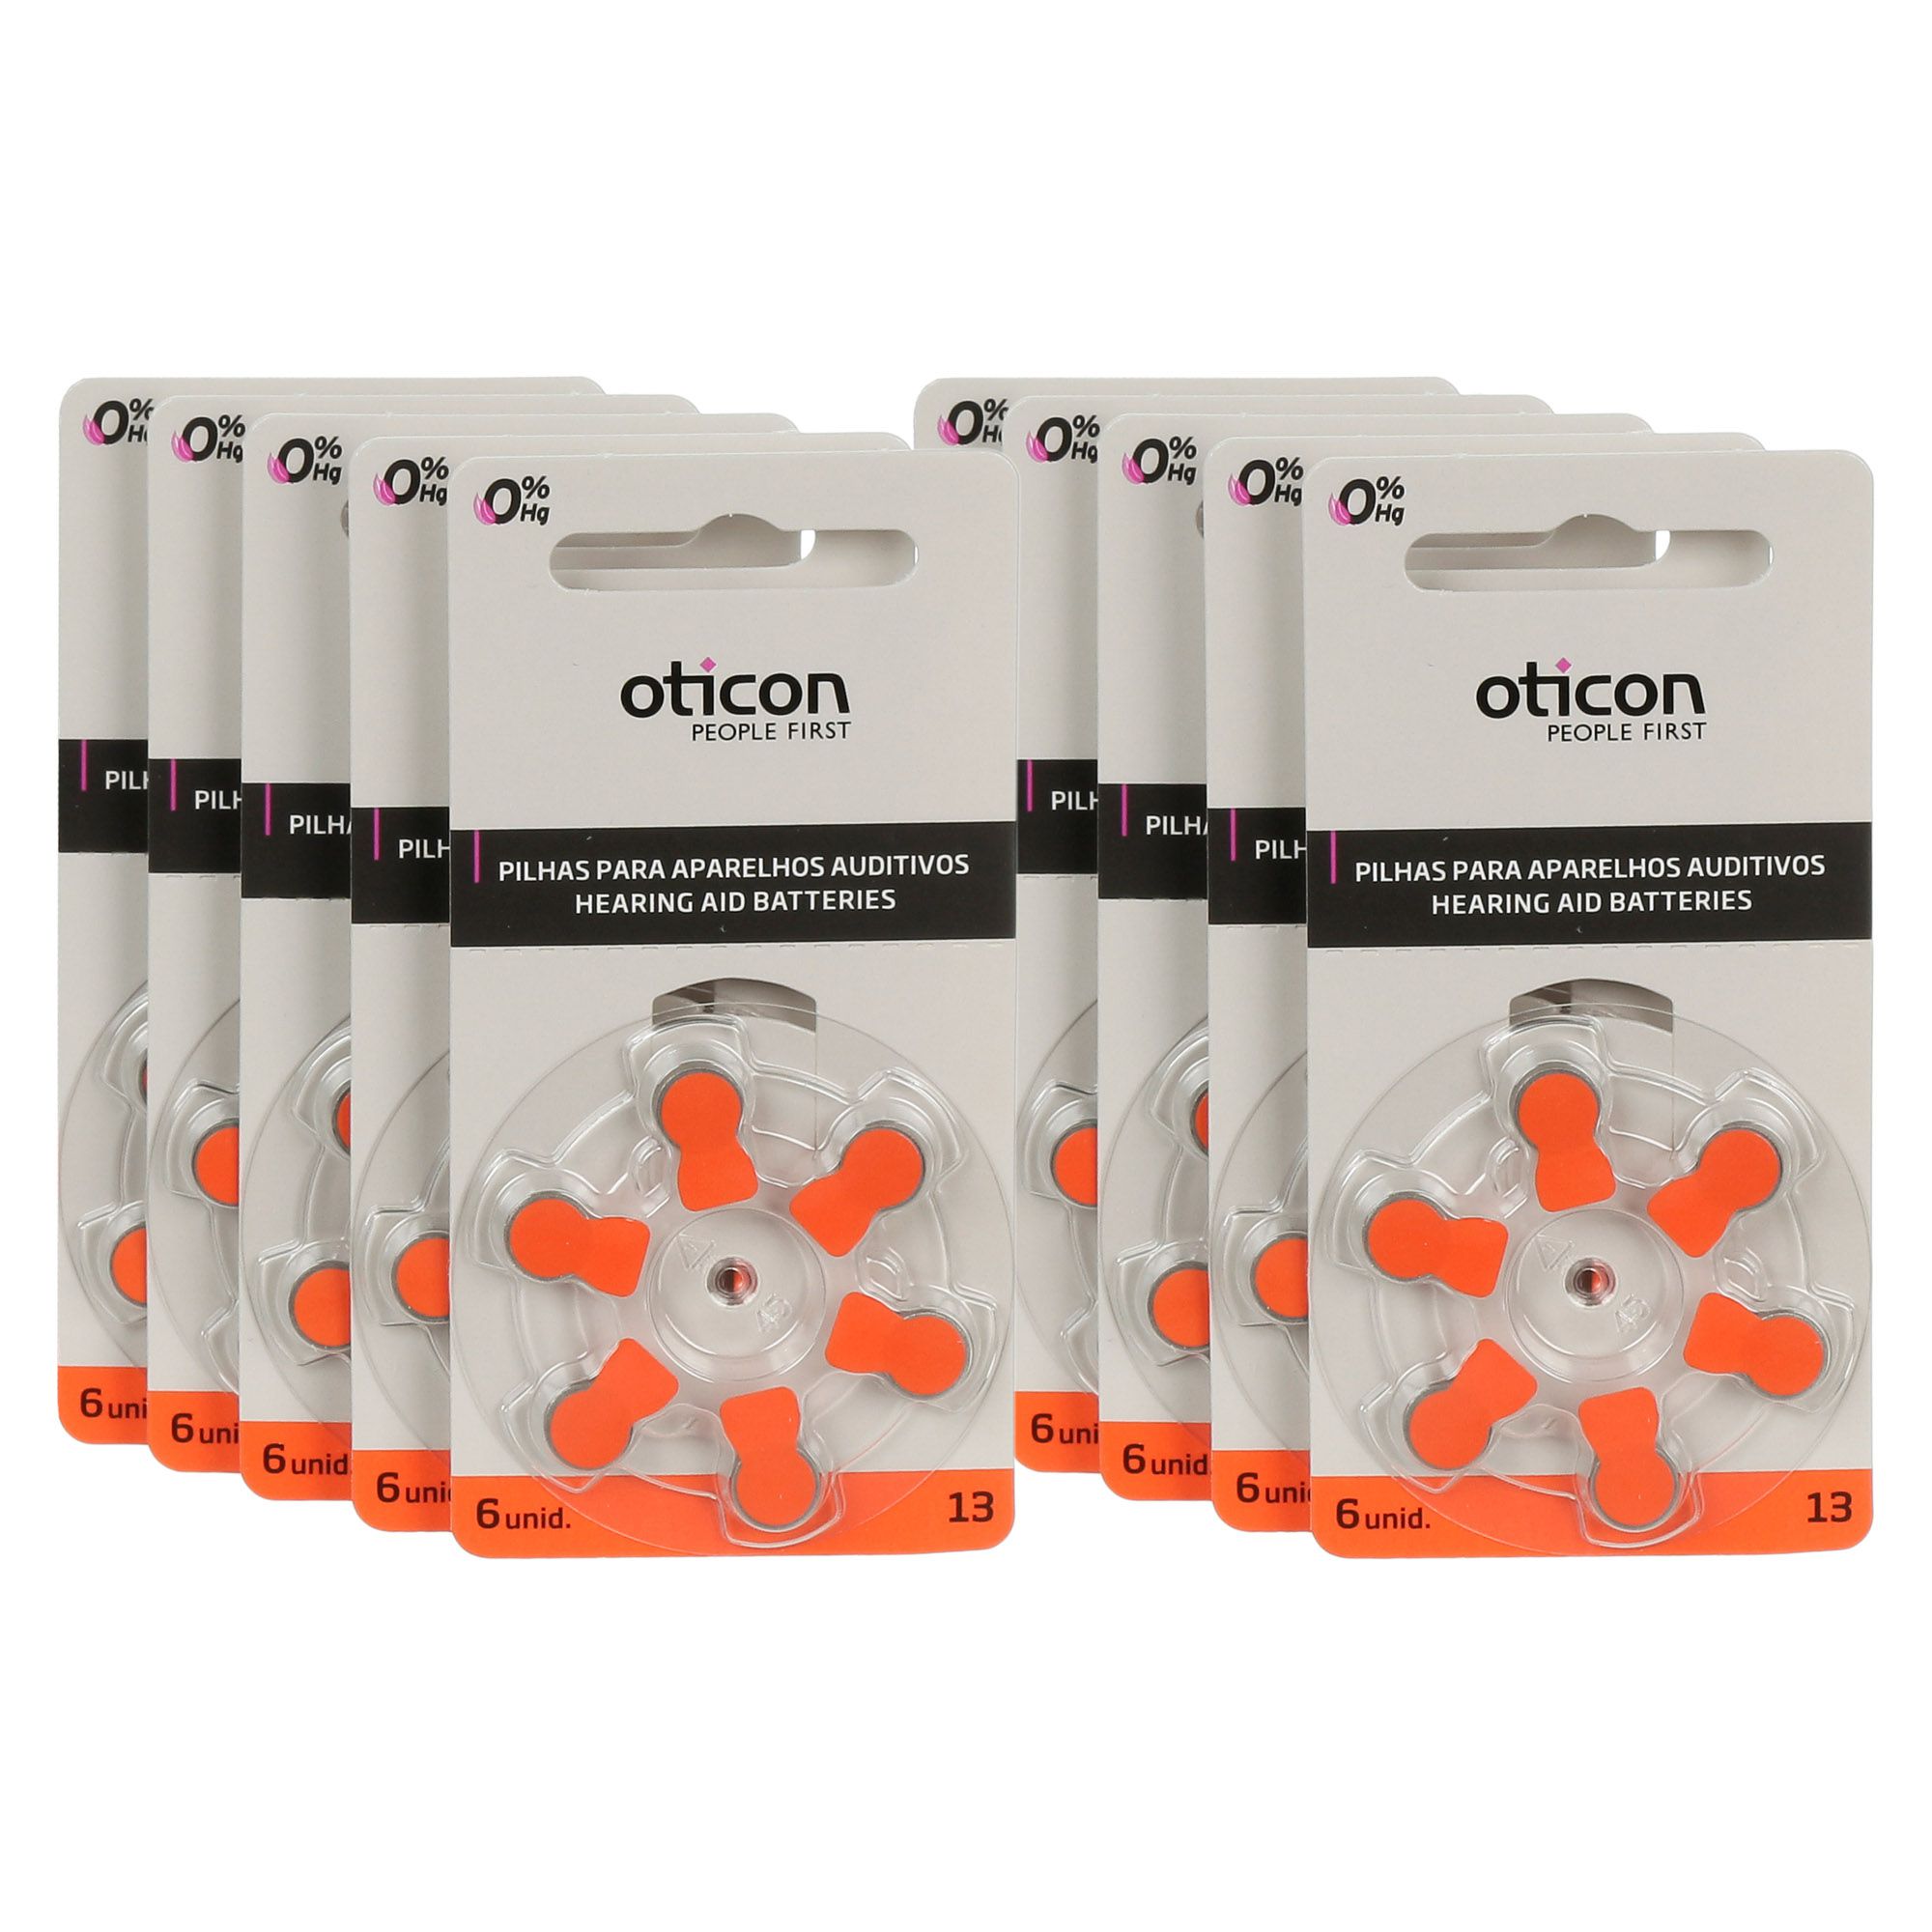 OTICON 13 / PR48 - 10 Cartelas - 60 Baterias para Aparelho Auditivo - SONORA